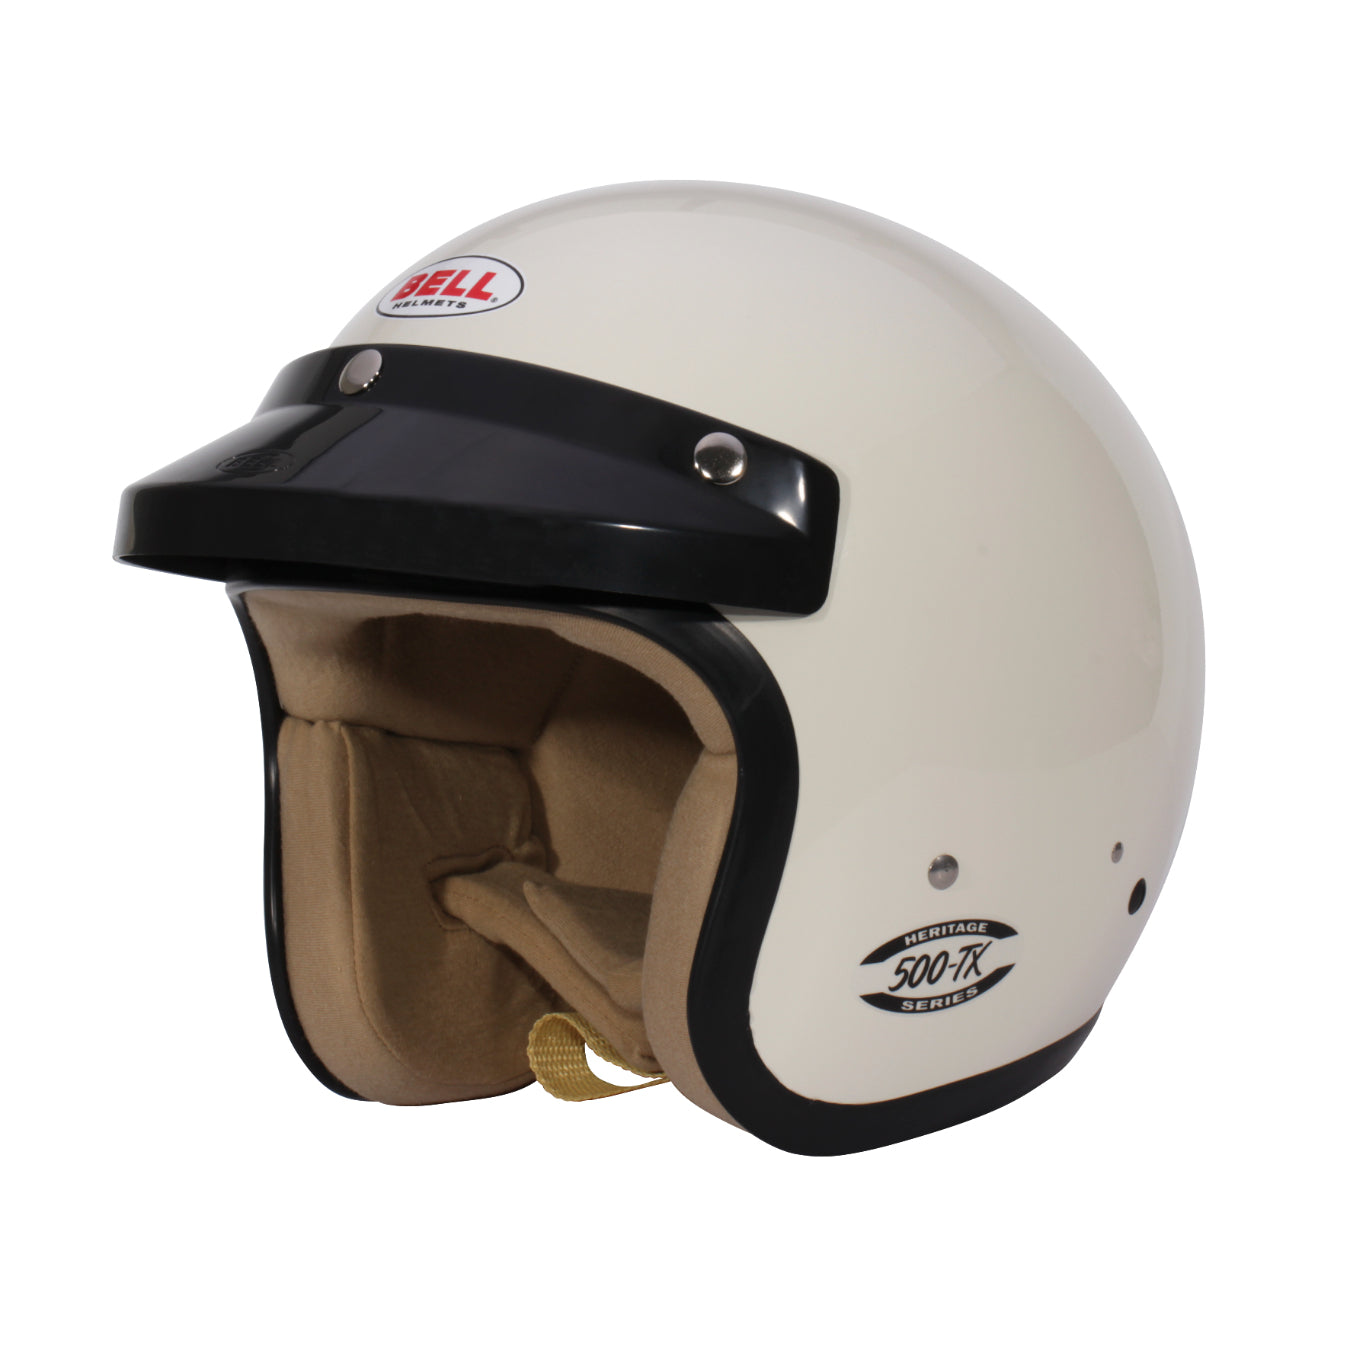 BELL 500-TX Vintage white FIA jet helmet